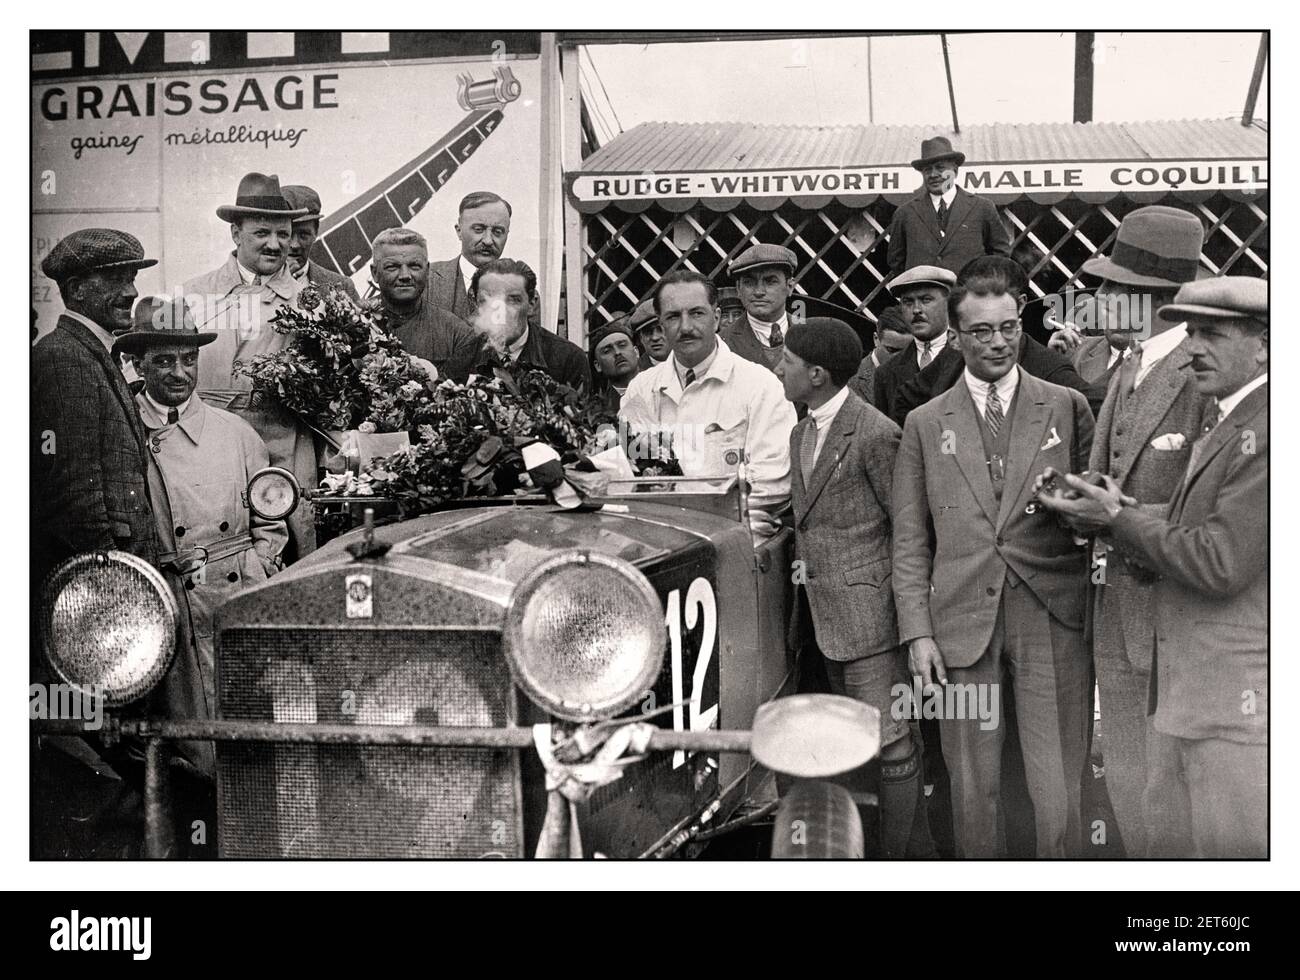 Jahrgang 1928 Le Mans 24-Stunden-Rennen mit Itala Nr.12 von Benoist und Dauvergne bei den 1928 24 Stunden von Le Mans Frankreich wurde das Auto 8. in der Gesamtwertung platziert, aber zuerst in der 2,0-Liter-Klasse Itala 65 S Torpedo - Itala L6 Stockfoto